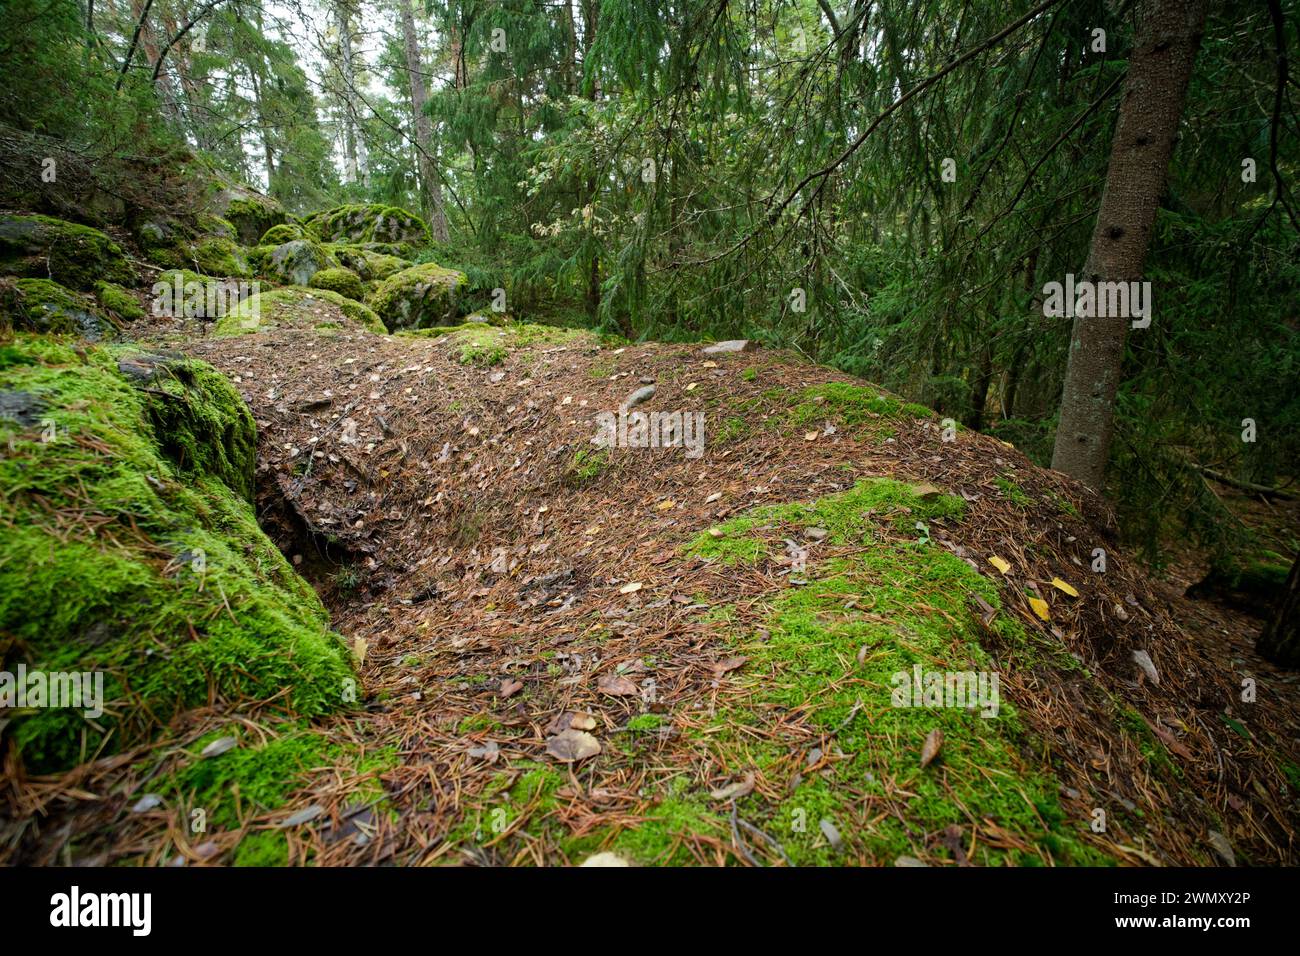 Sett vom europäischen Dachs (Meles meles) in einem Wald, wildes Finnland Stockfoto